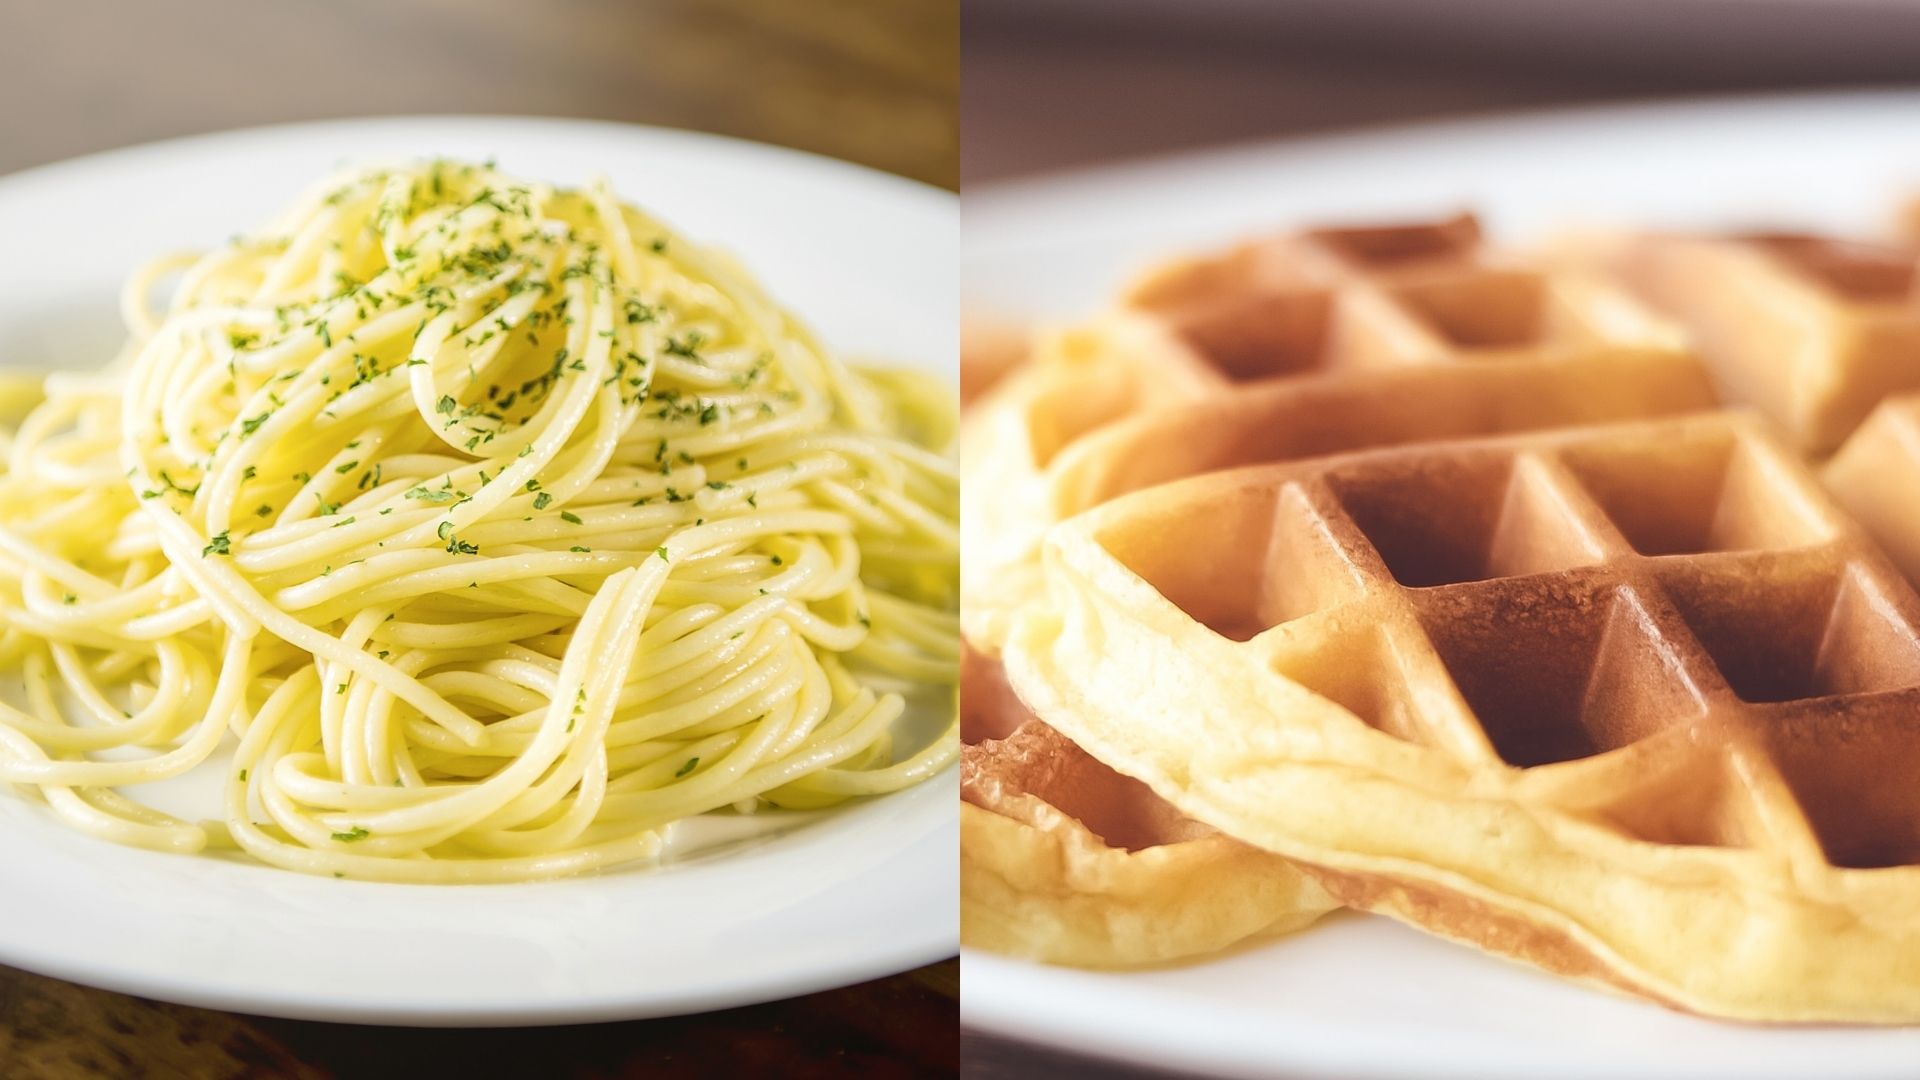 Play Therapy (spaghetti) vs. Talk Therapy (waffles) : A Comparison